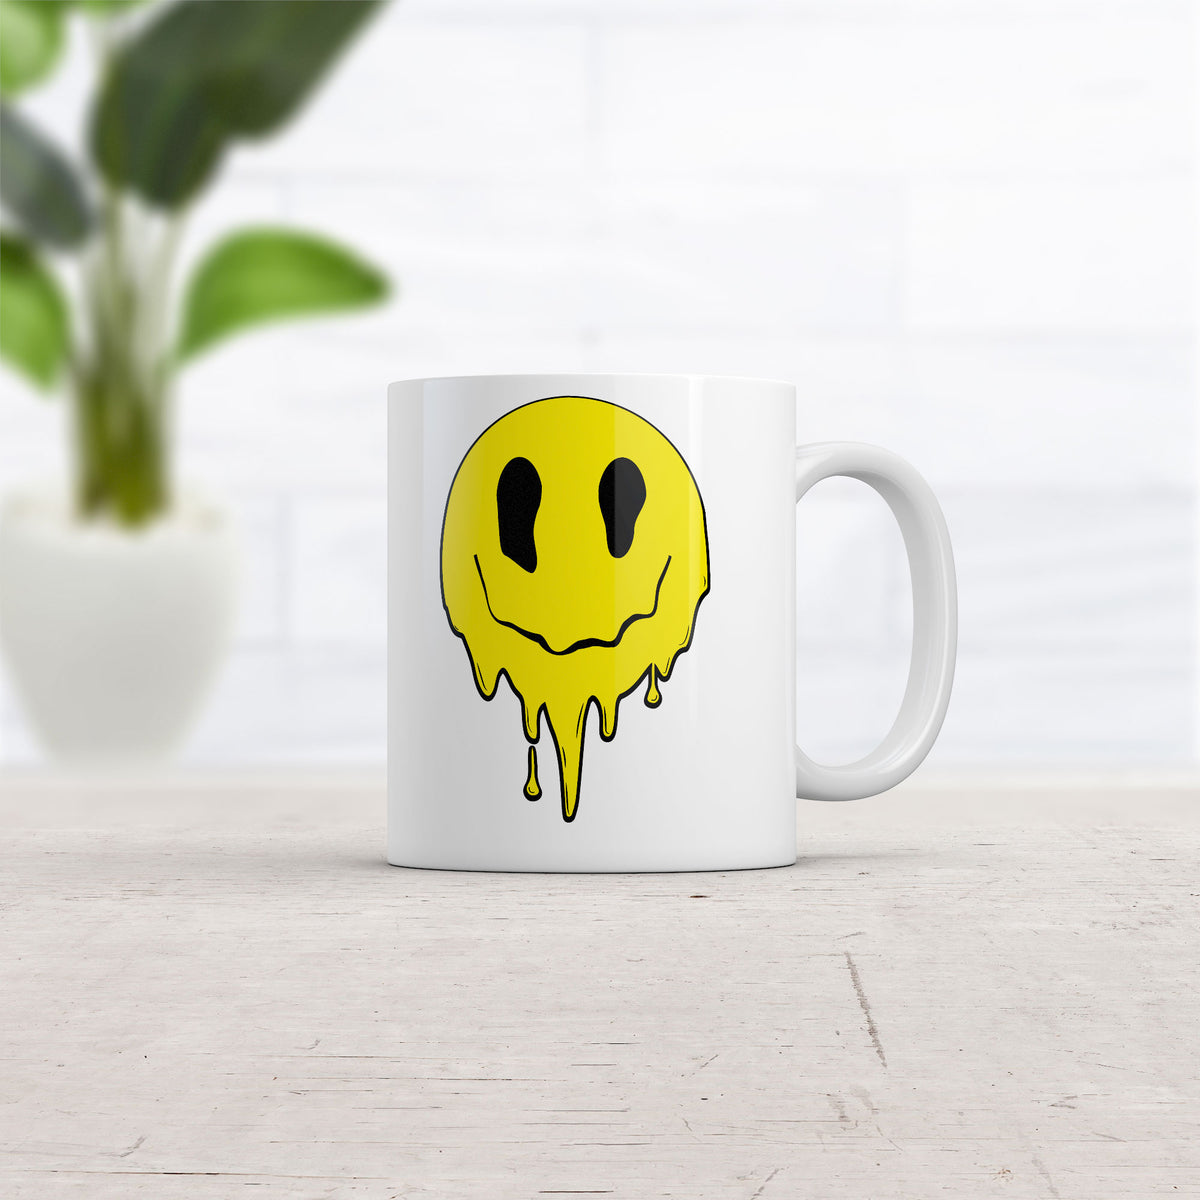 Dripping Smile Mug